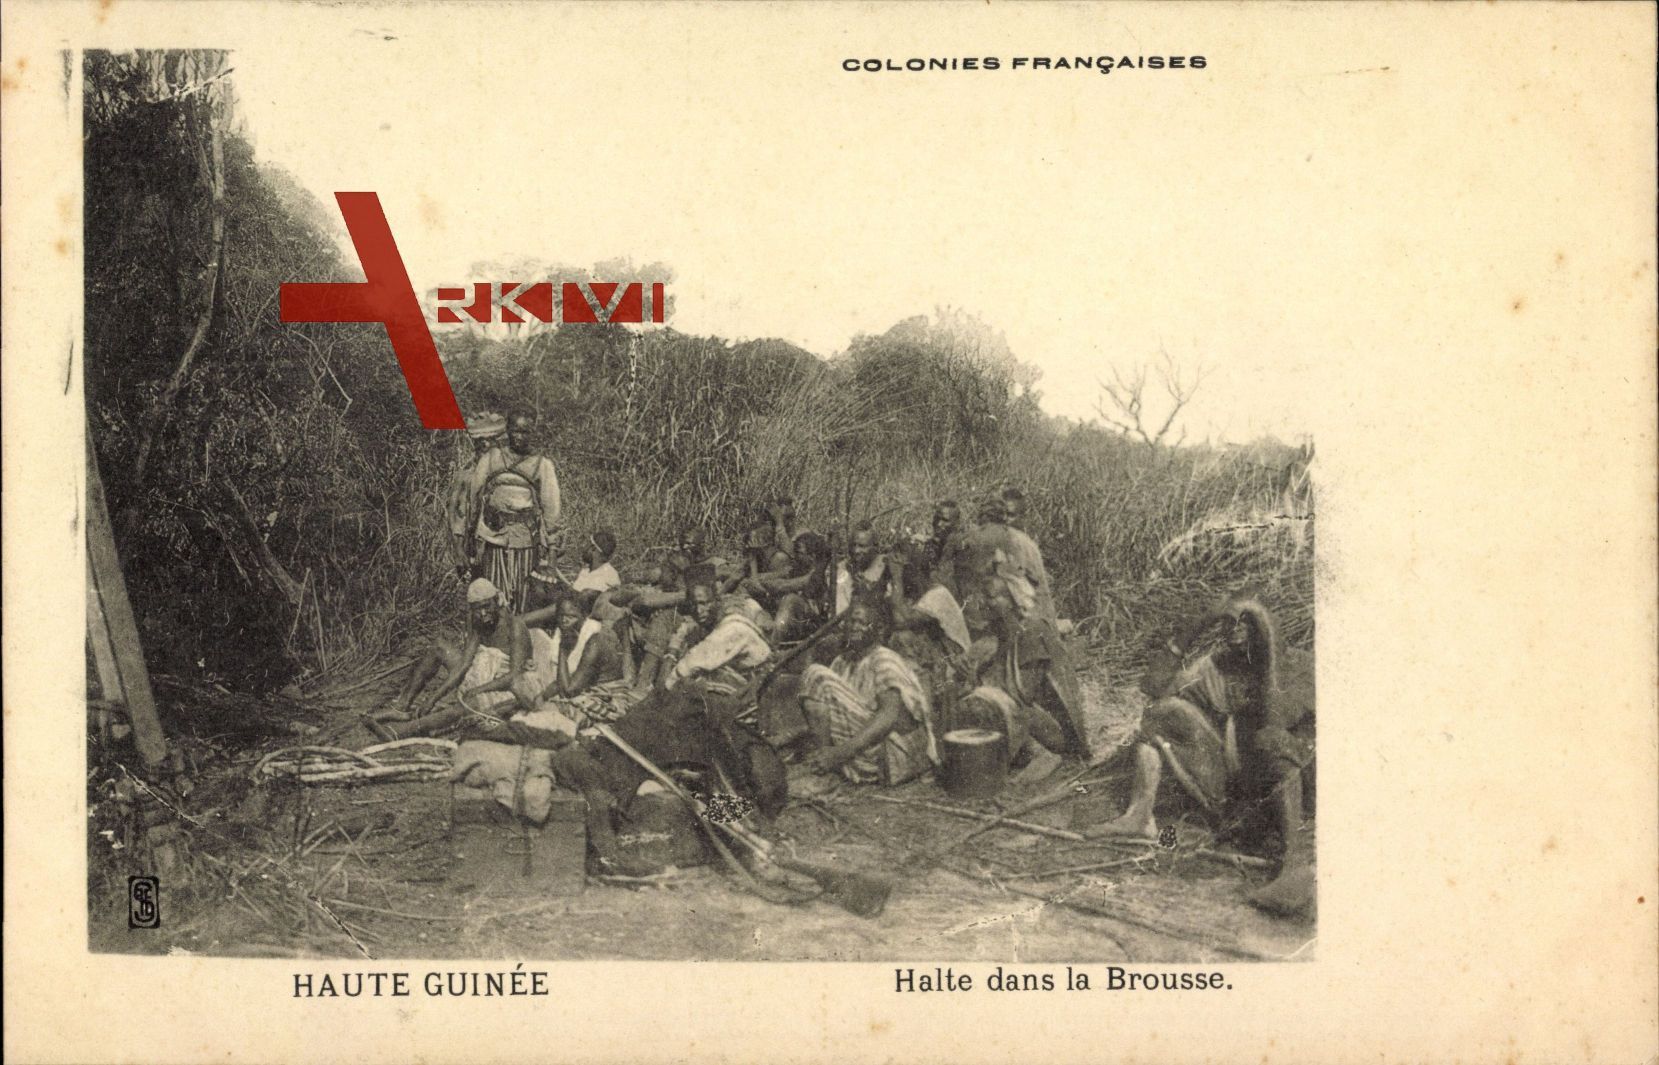 Haute Guinée Guinea, Colonies Francaises, Halte dans la Brousse